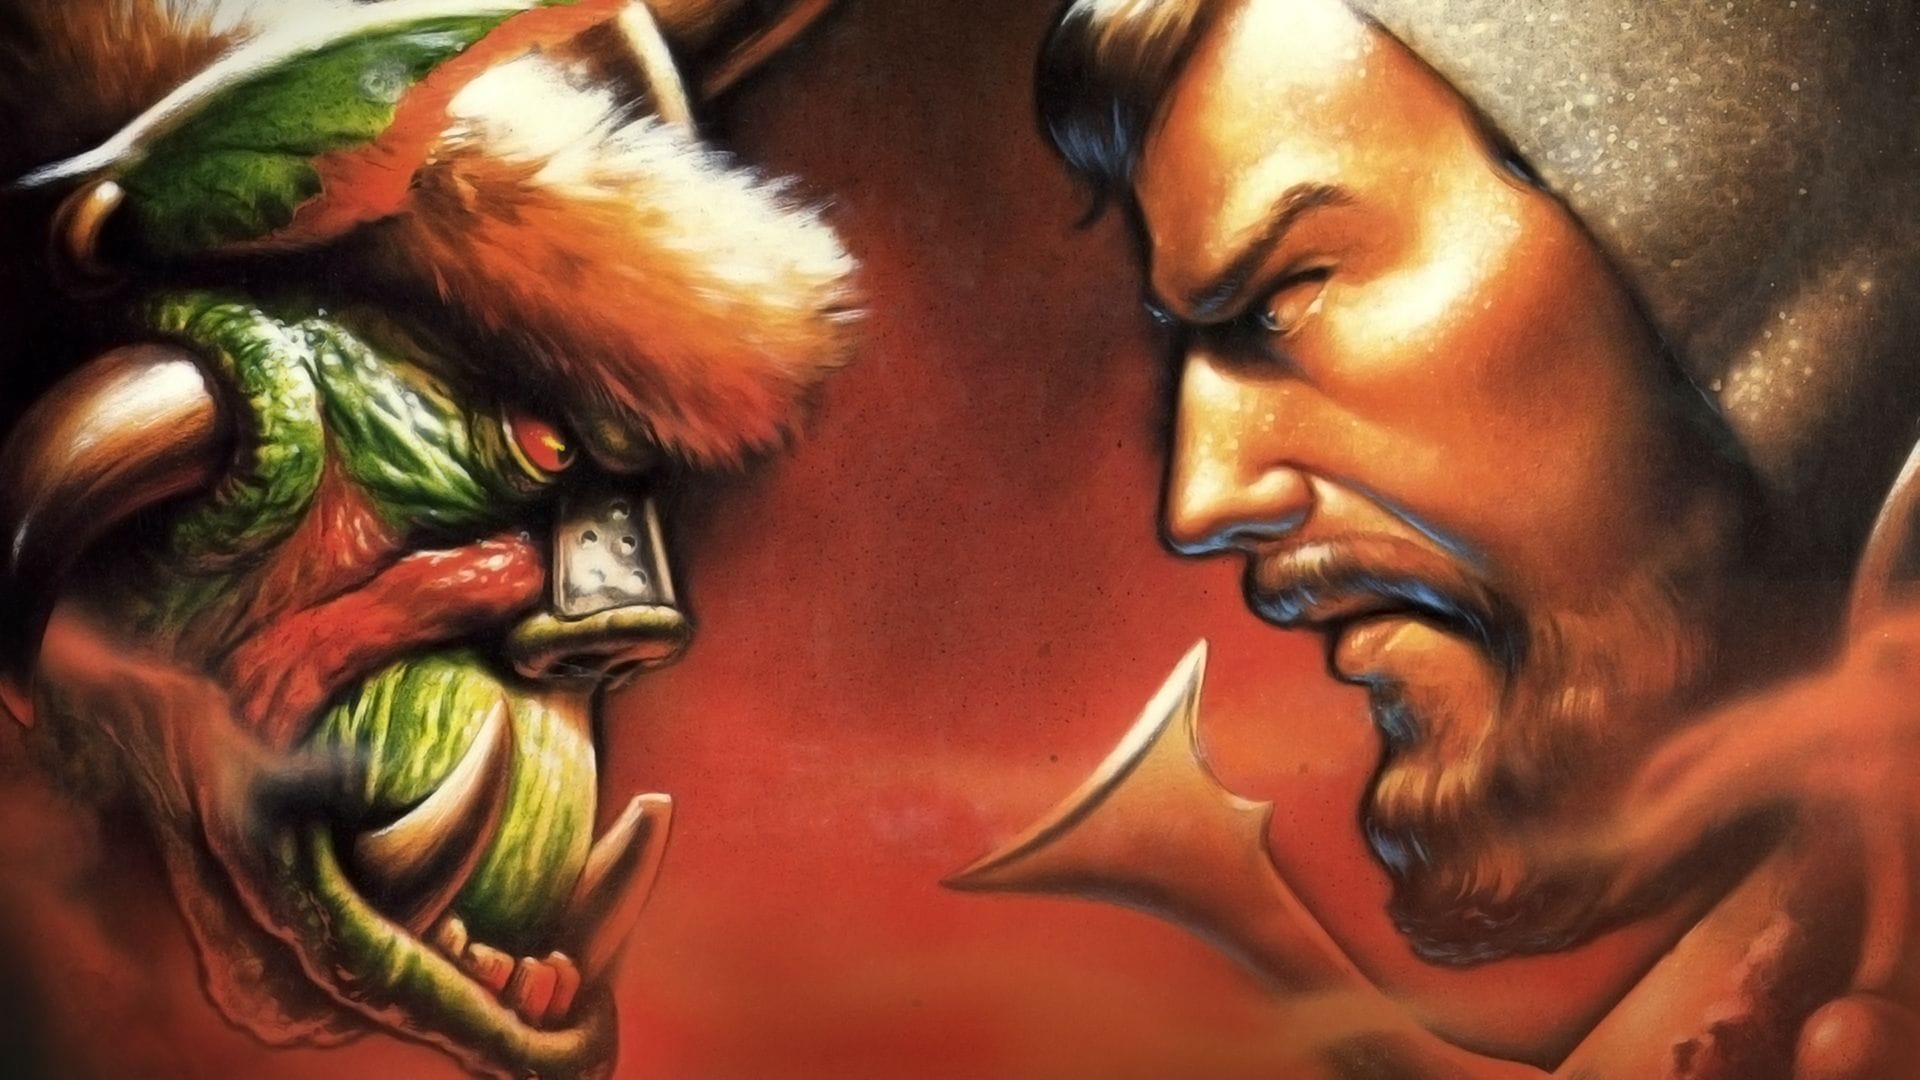 Kup grę Warcraft: Orcs & Humans w serwisie Battle.net już teraz